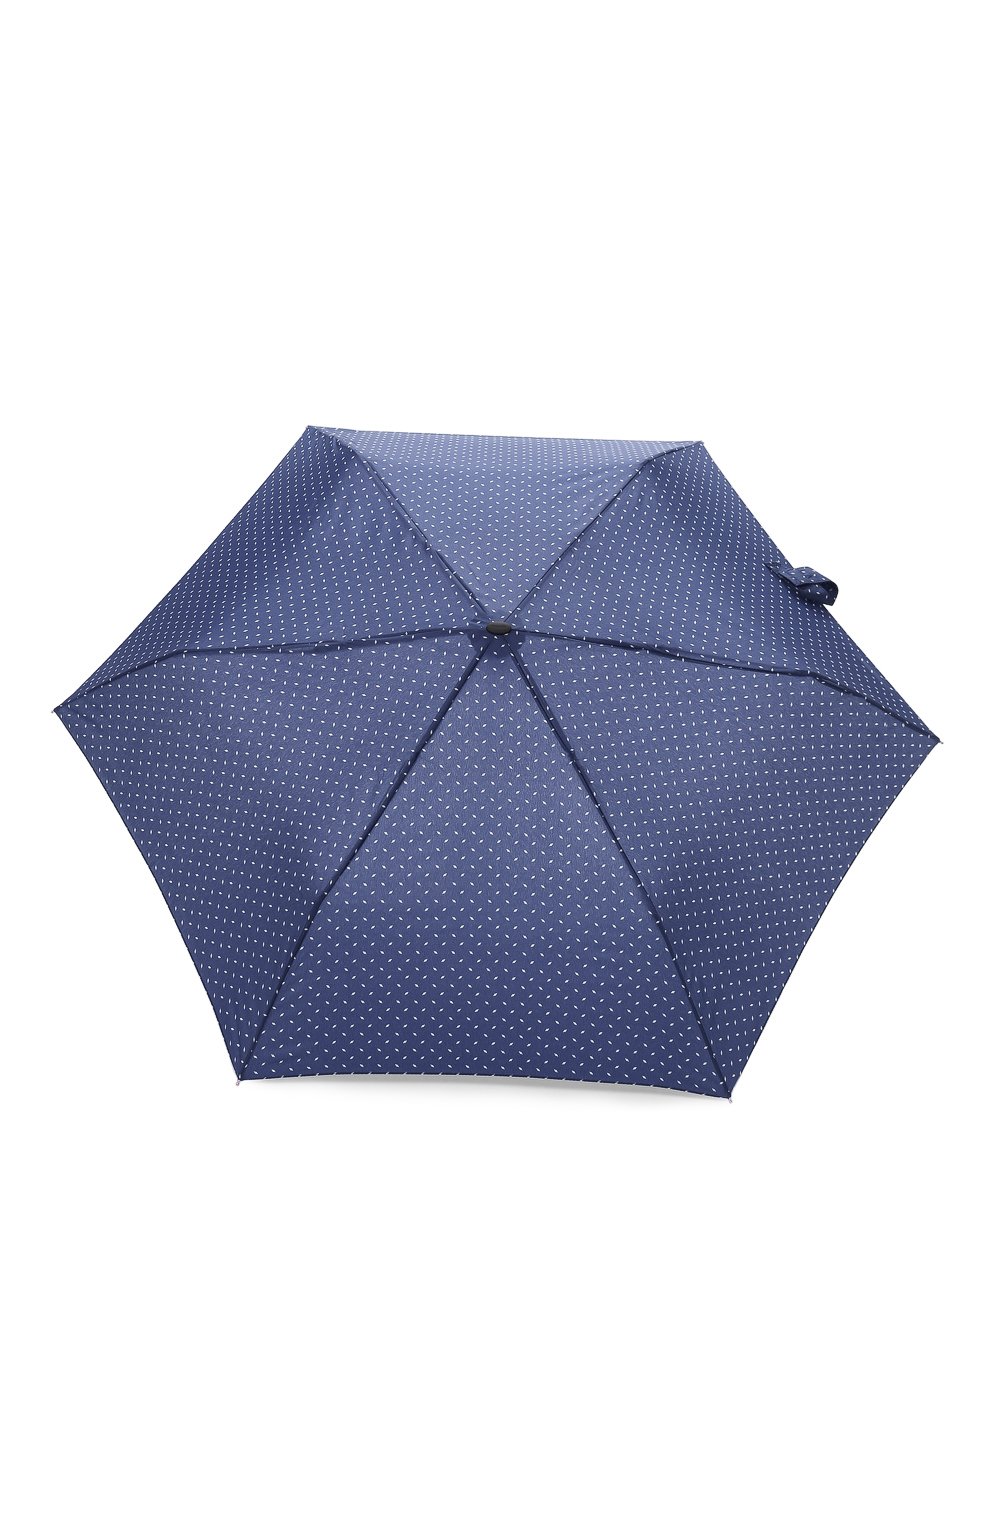 Женский складной зонт DOPPLER синего цвета, арт. 722865 RL01 | Фото 1 (Материал: Текстиль, Синтетический материал)